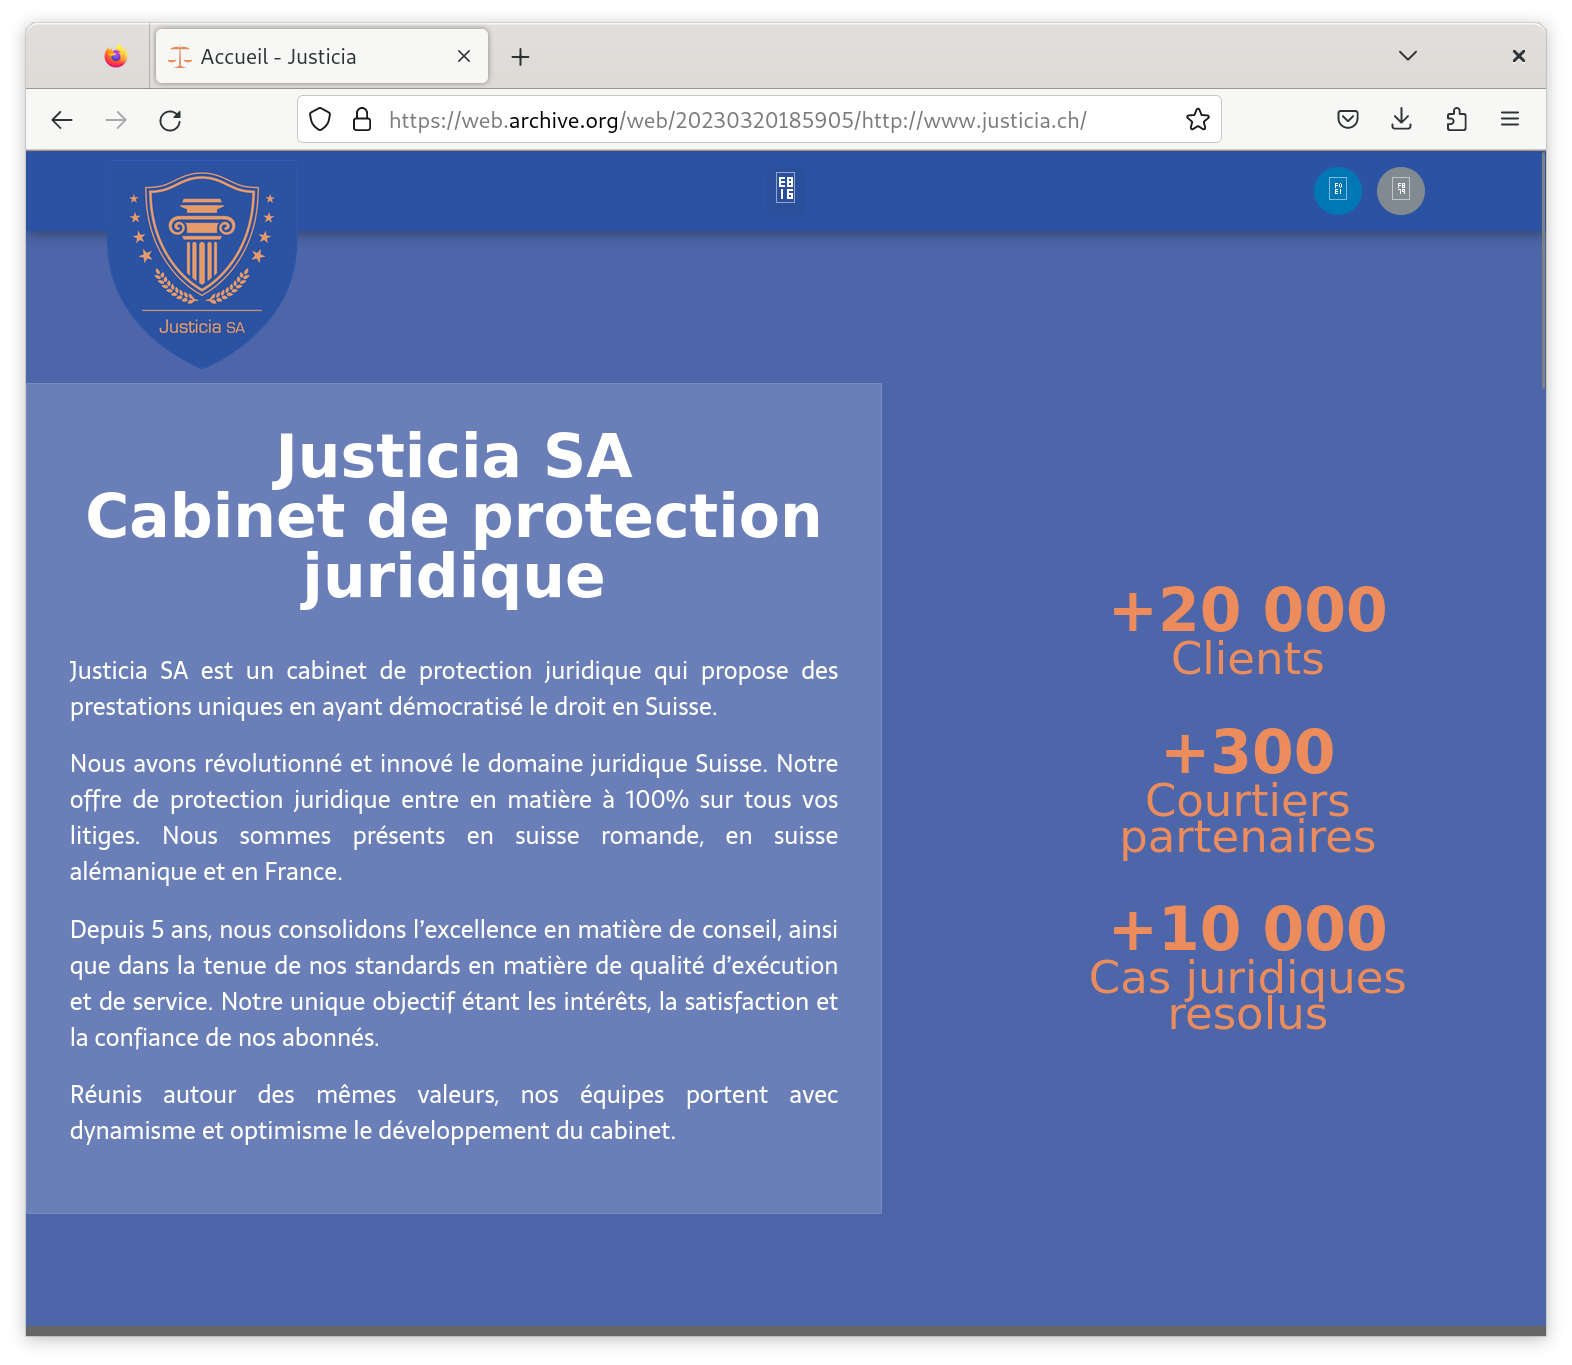 Justicia SA, 20000 clients